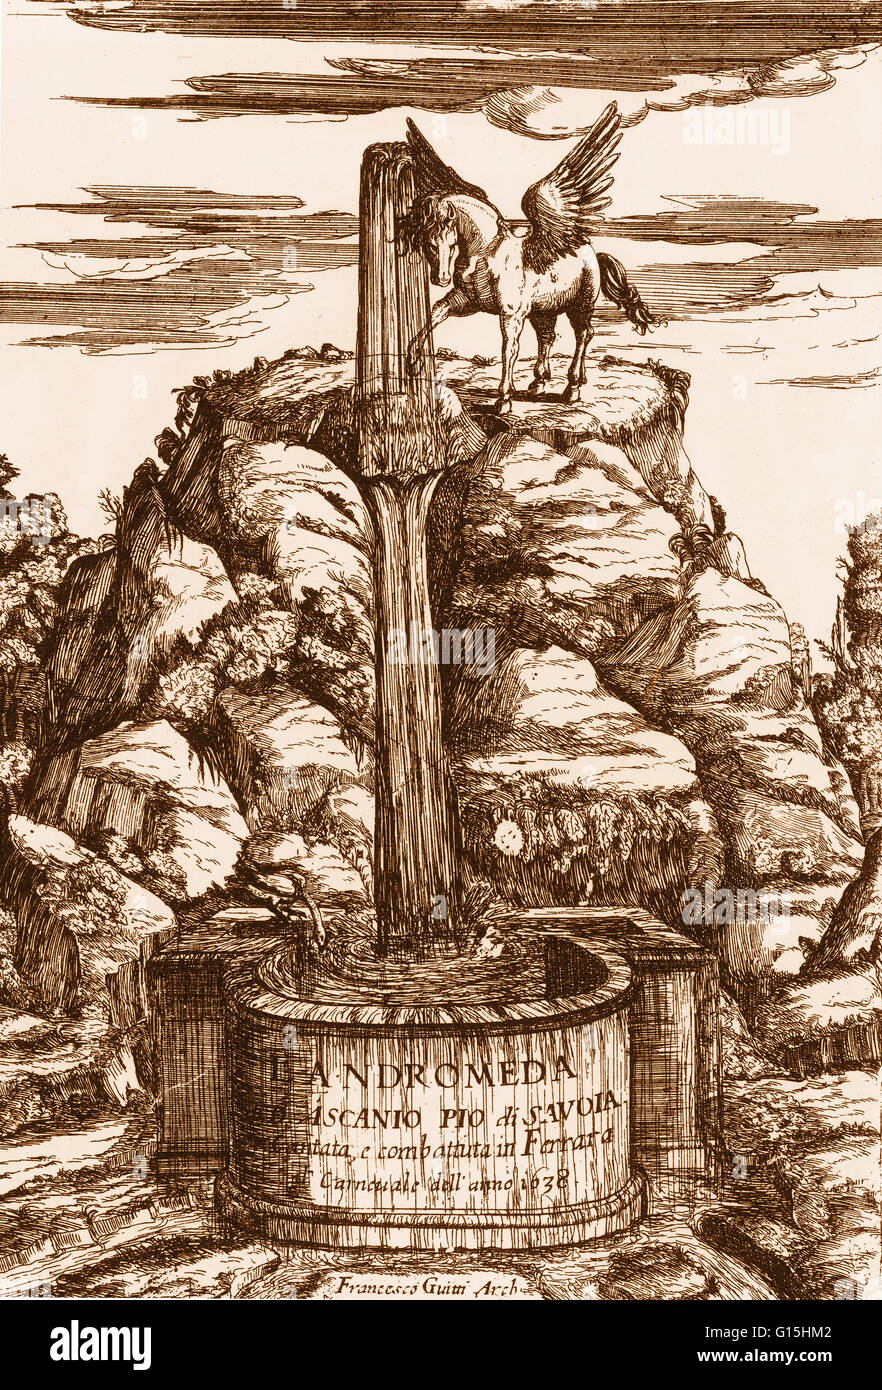 Pegasus sur le Mont Parnasse. Page de titre par Francesco Guitti d'Ascanio Pio's L'Andromède. Ferrera, 1638-39. Pegasus a été le cheval ailé de Bellérophon, un mythique héros grec qui le saisit à la fontaine. Banque D'Images